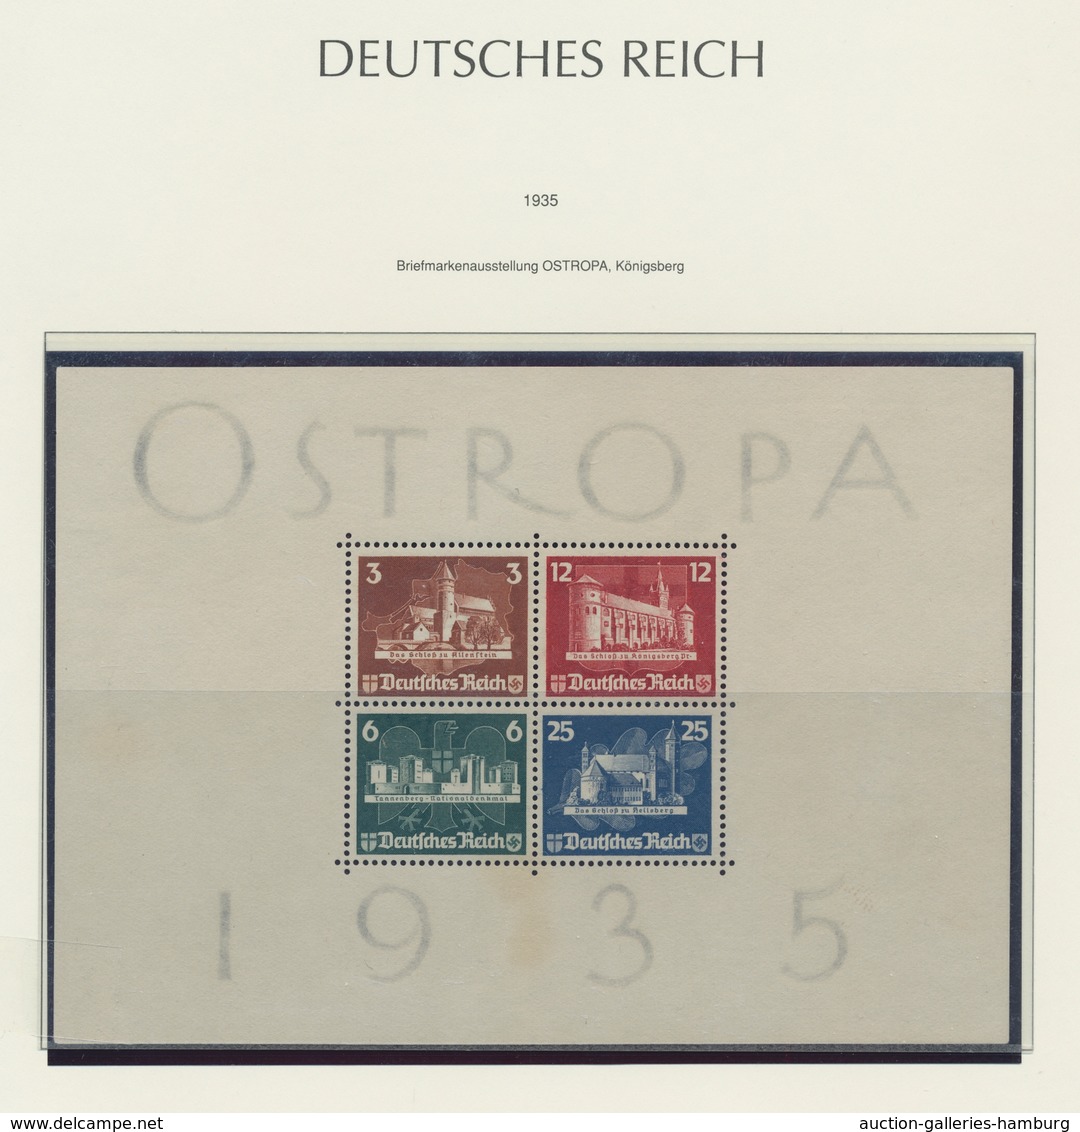 Deutsches Reich - 3. Reich: 1933-45, komplette Sammlung im neuwertigen "Leuchtturm-SF"-Vordruckalbum